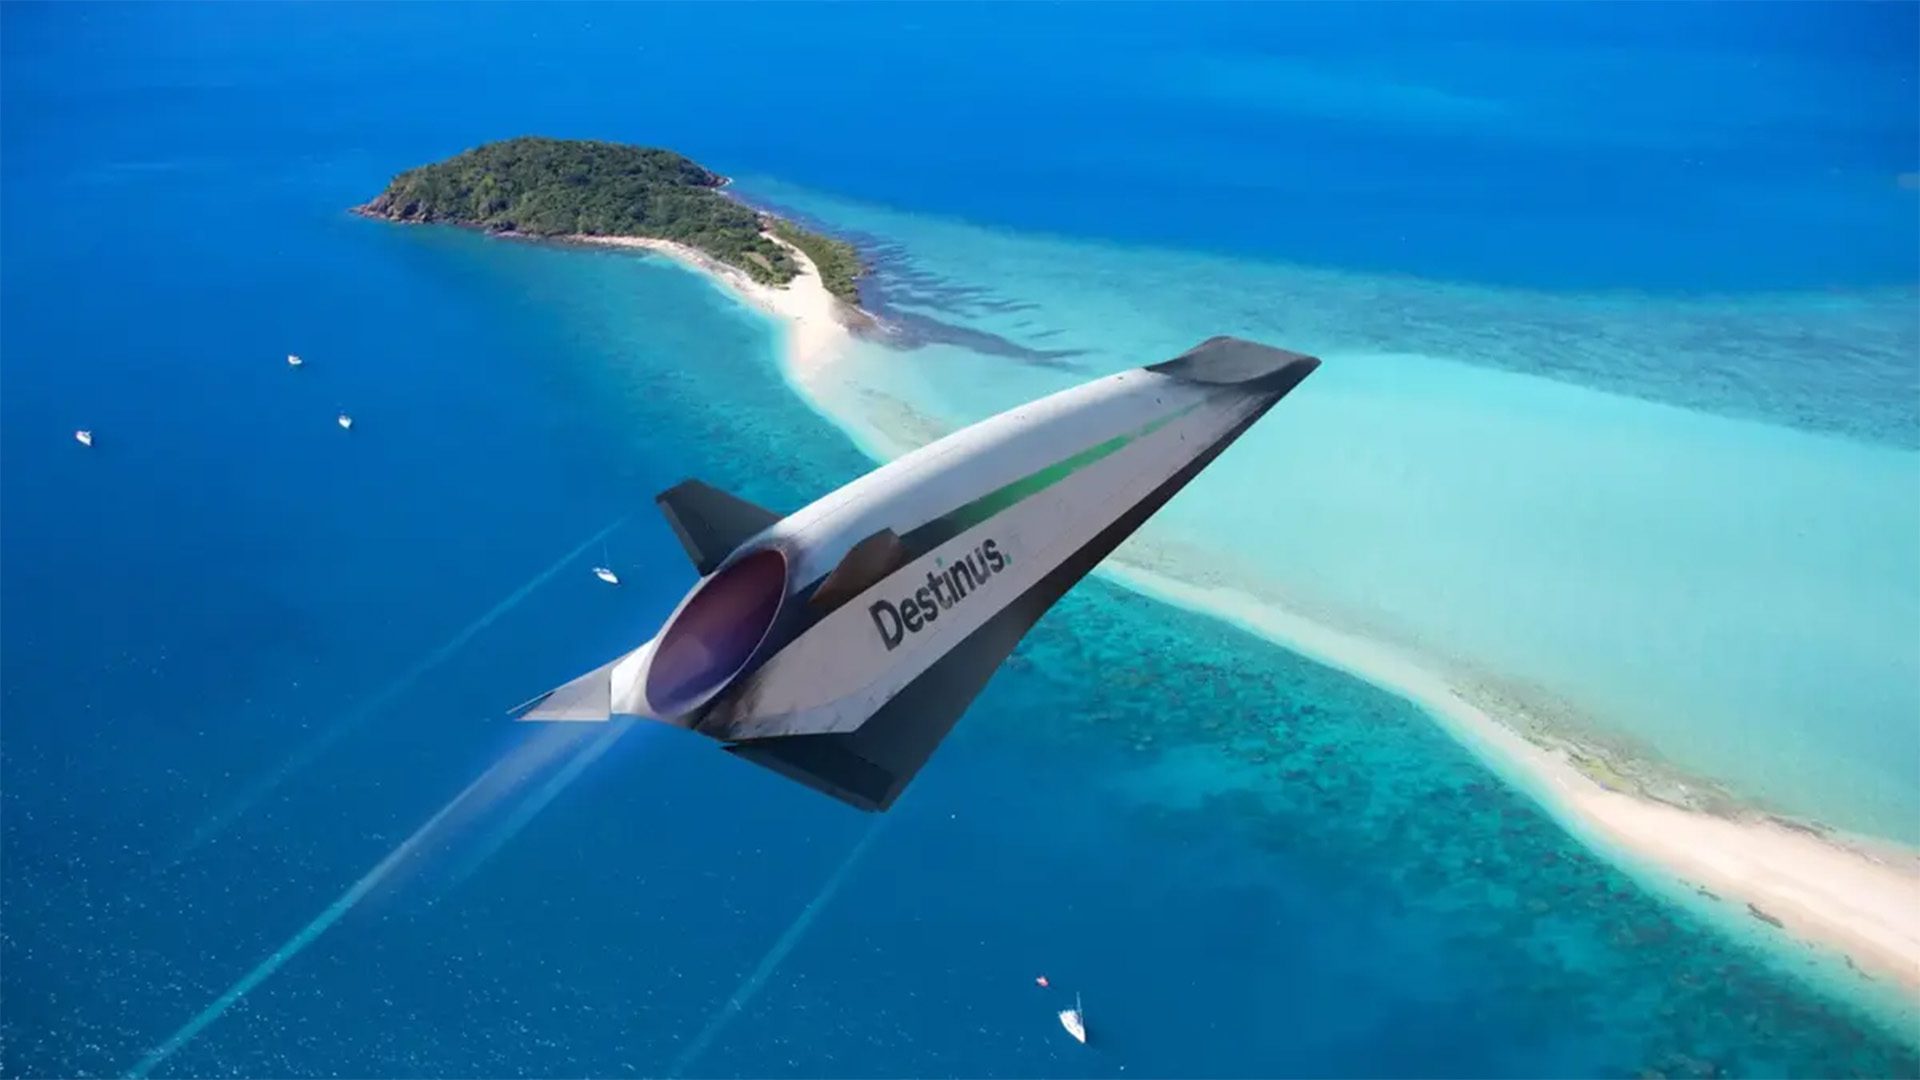 Destinus' Hypersonic Hydrogen-Powered Jet